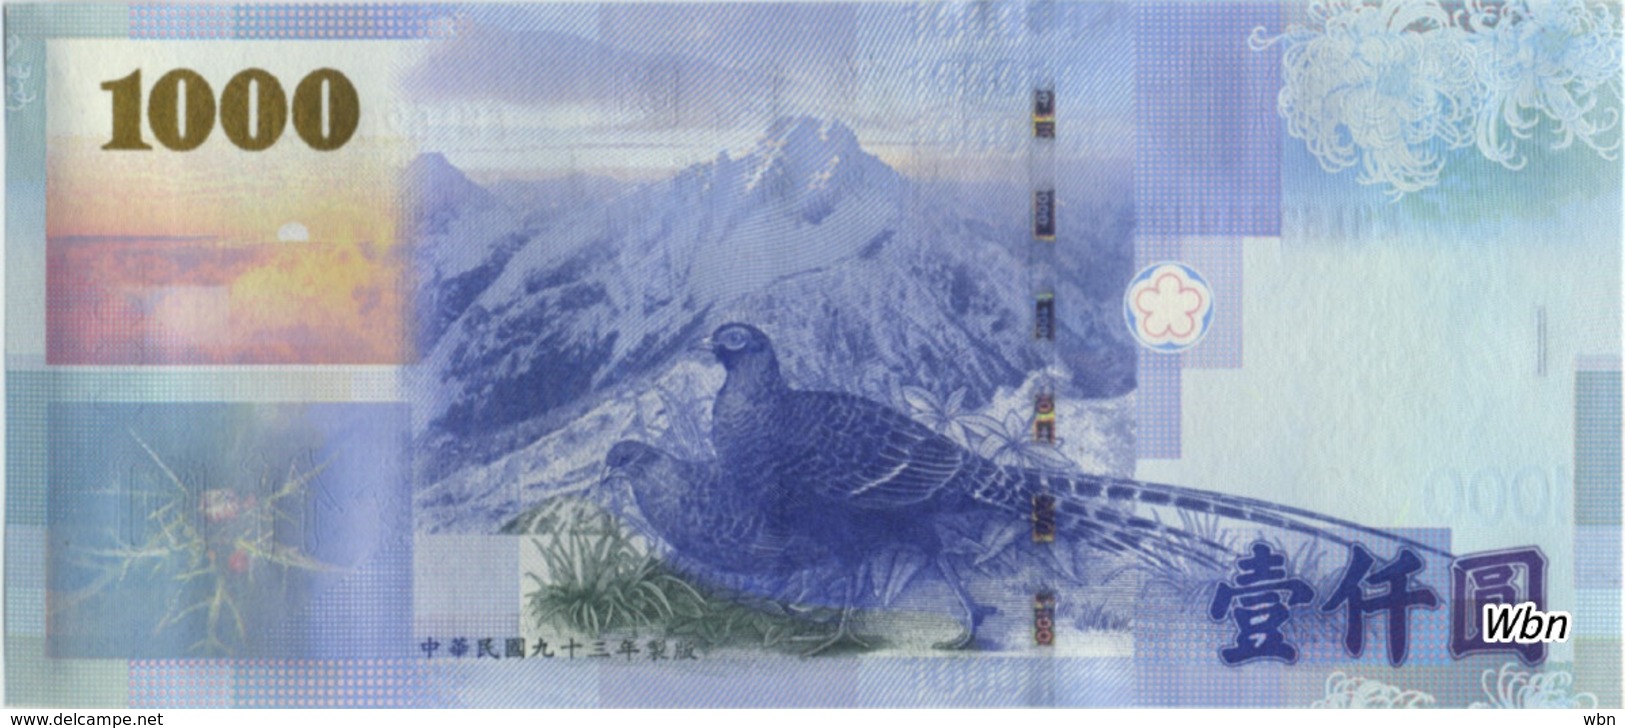 Taiwan 1000 NT$ (P1997) -UNC- - Taiwan